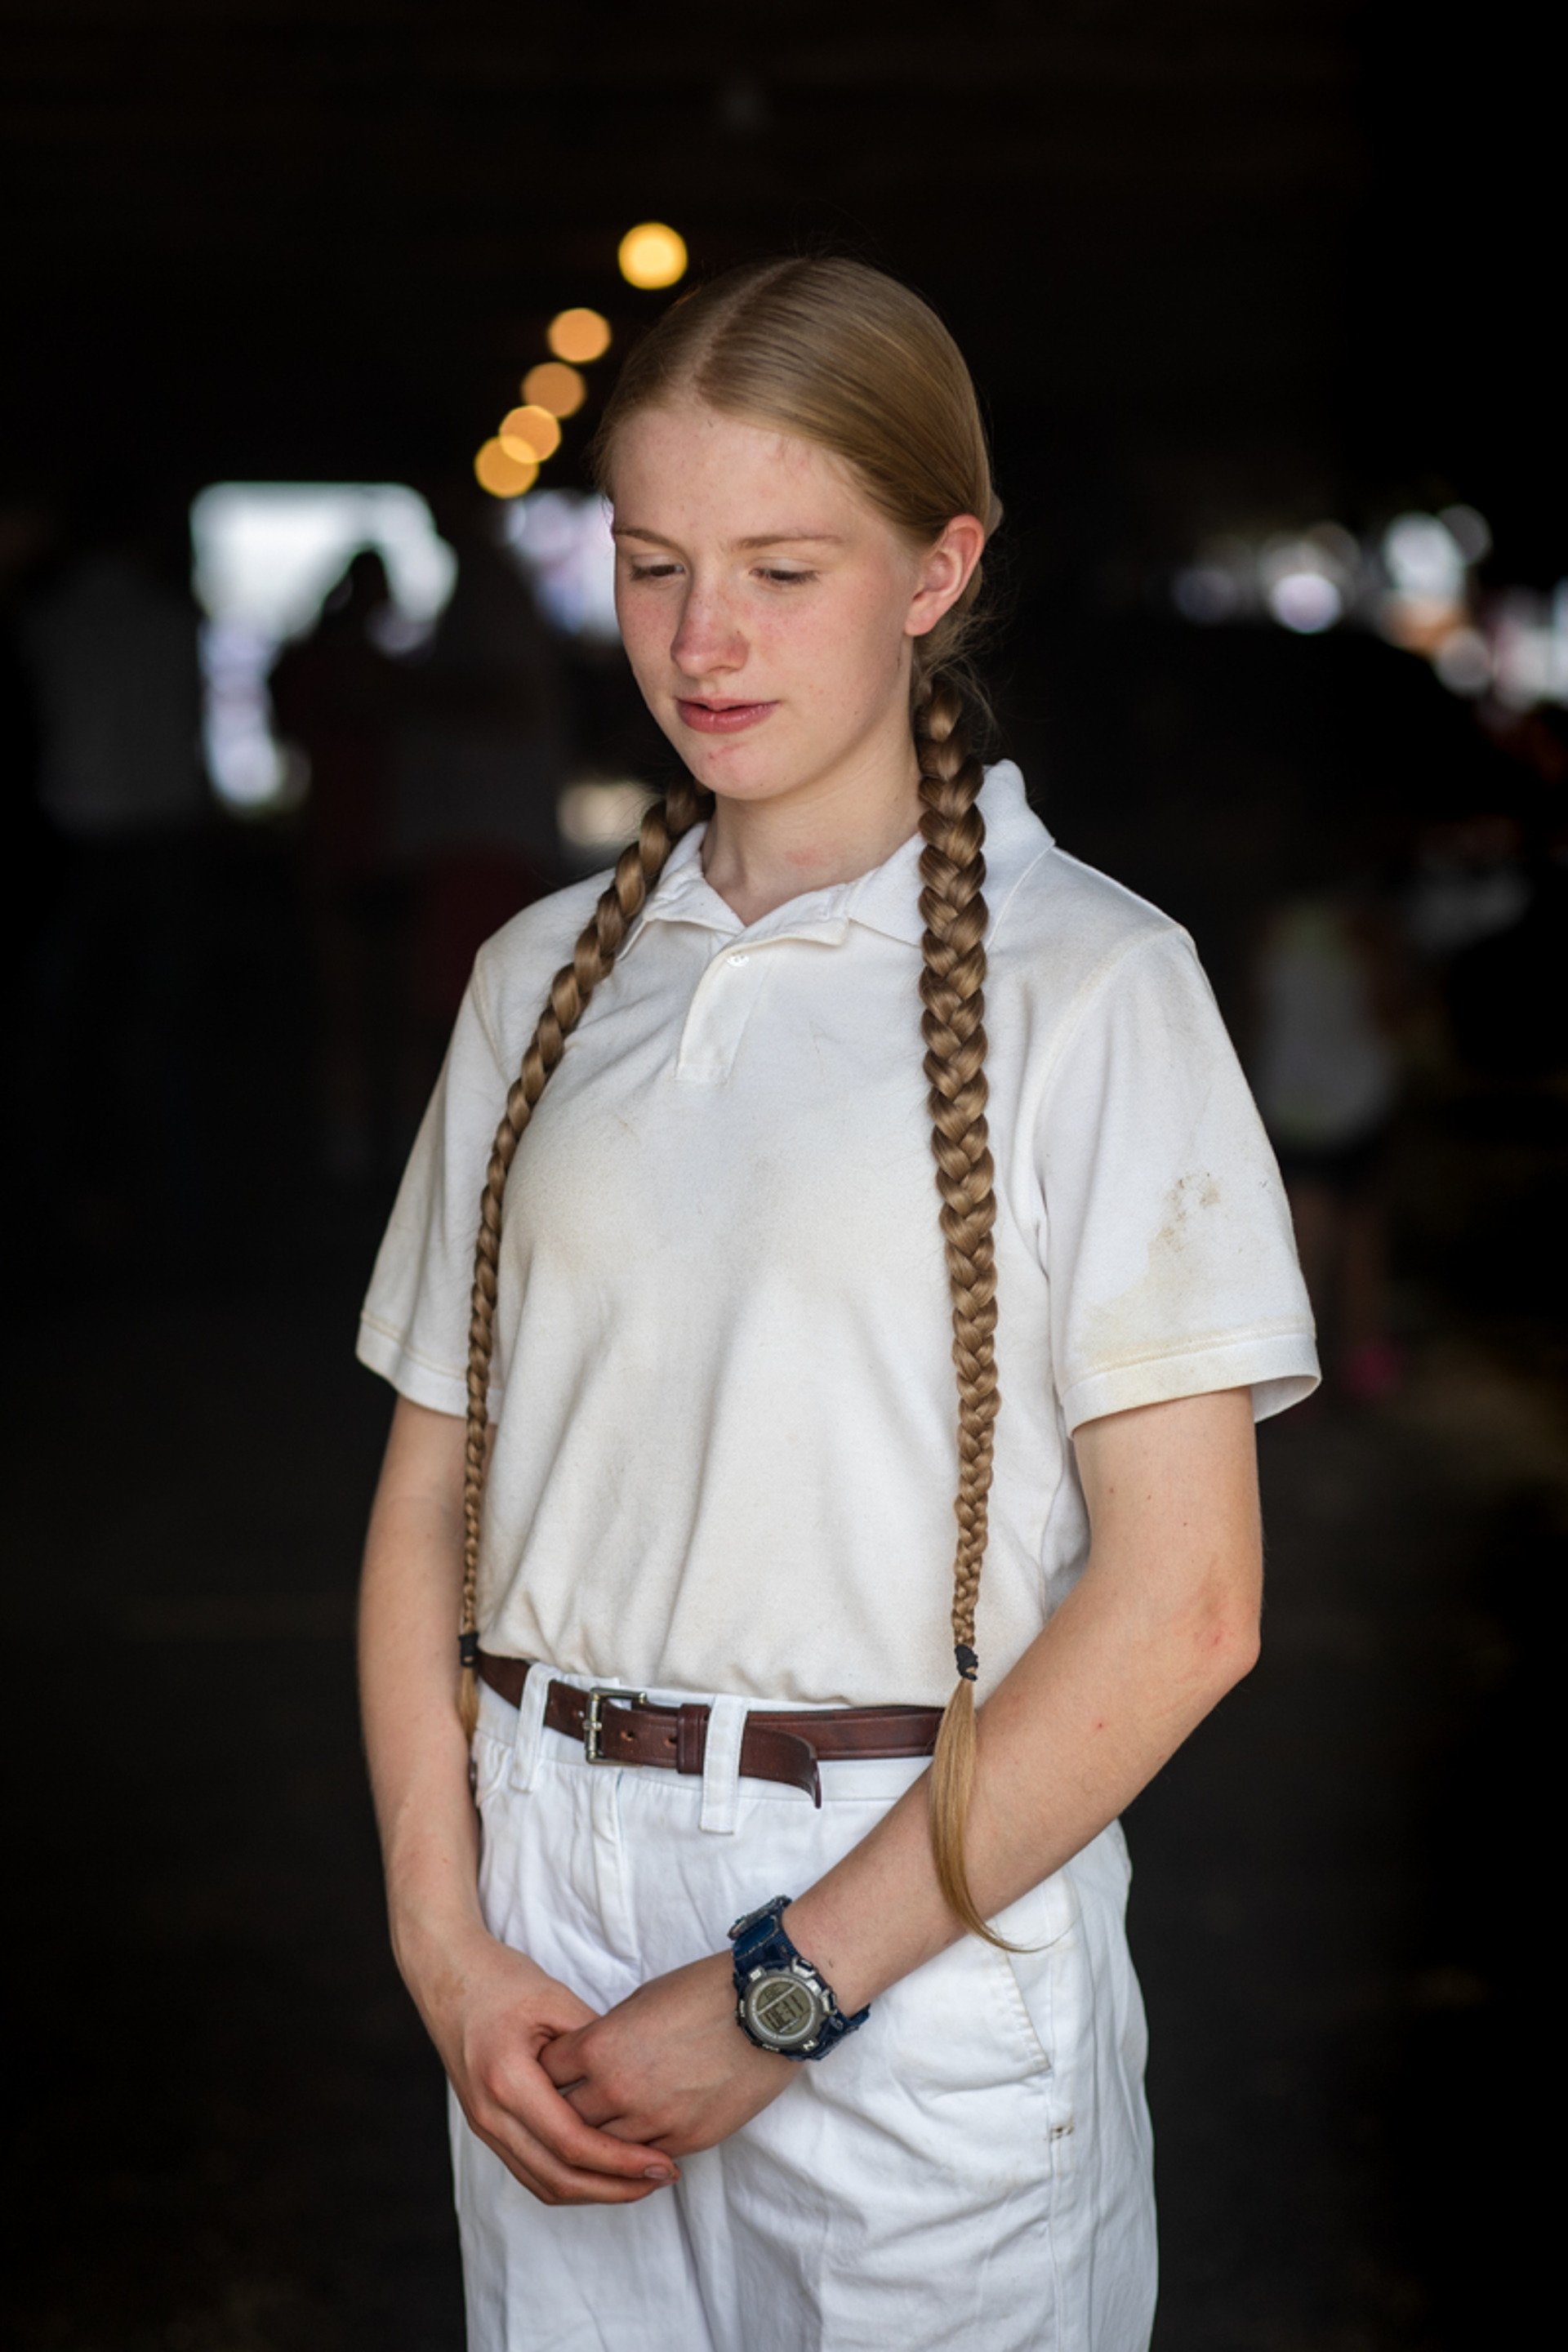 Girl with Braided Hair, Cummington Fair by Mark Cáceres